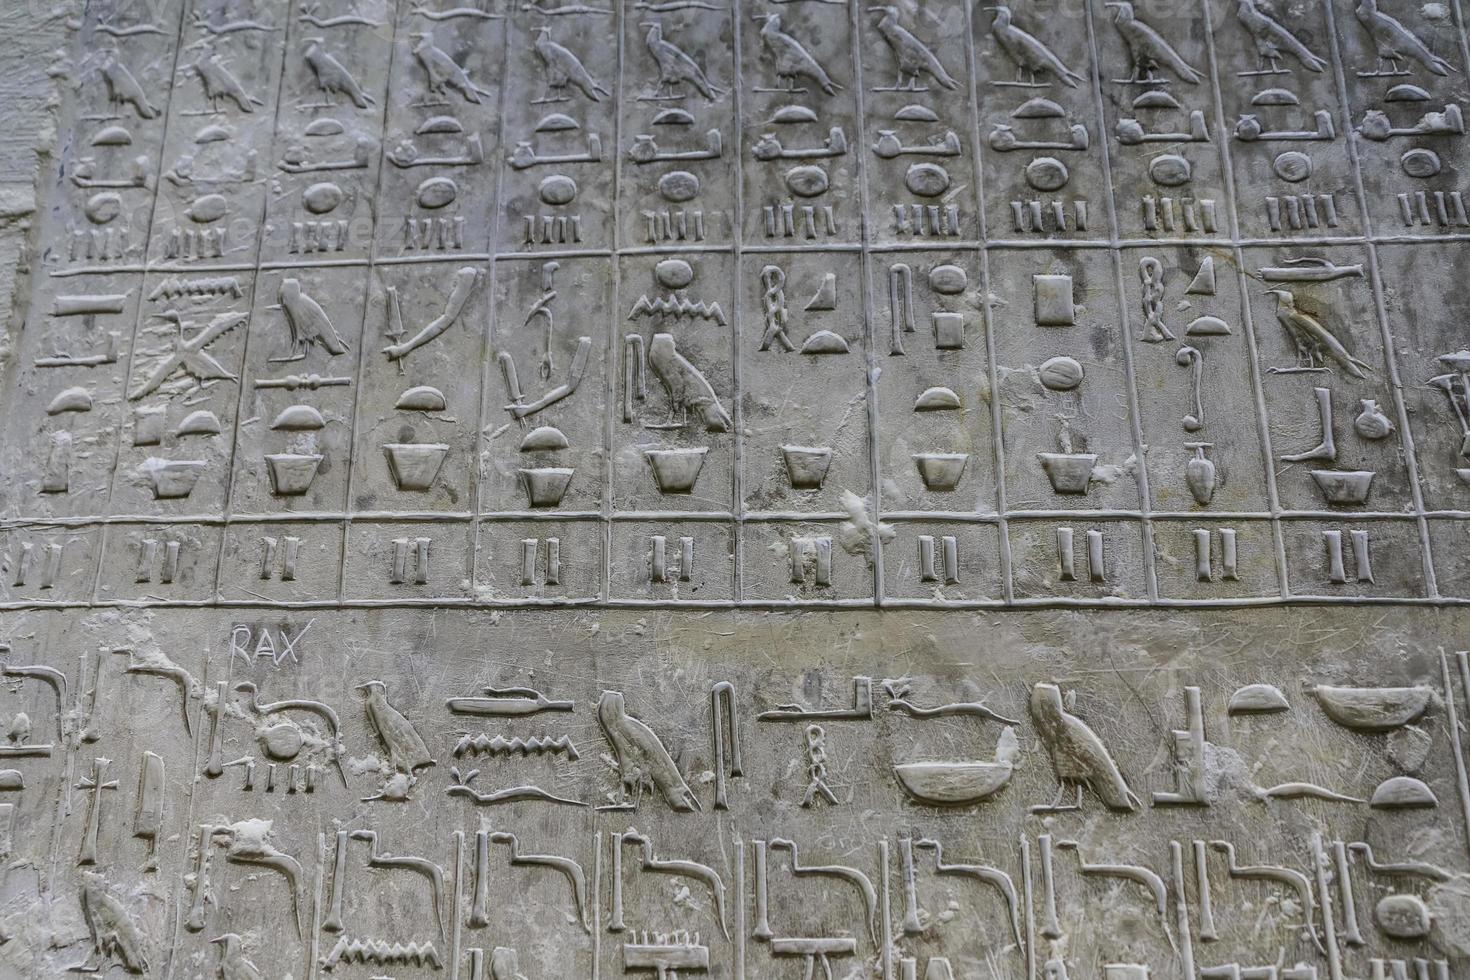 testi piramidali nella piramide di unas, saqqara, cairo, egitto foto